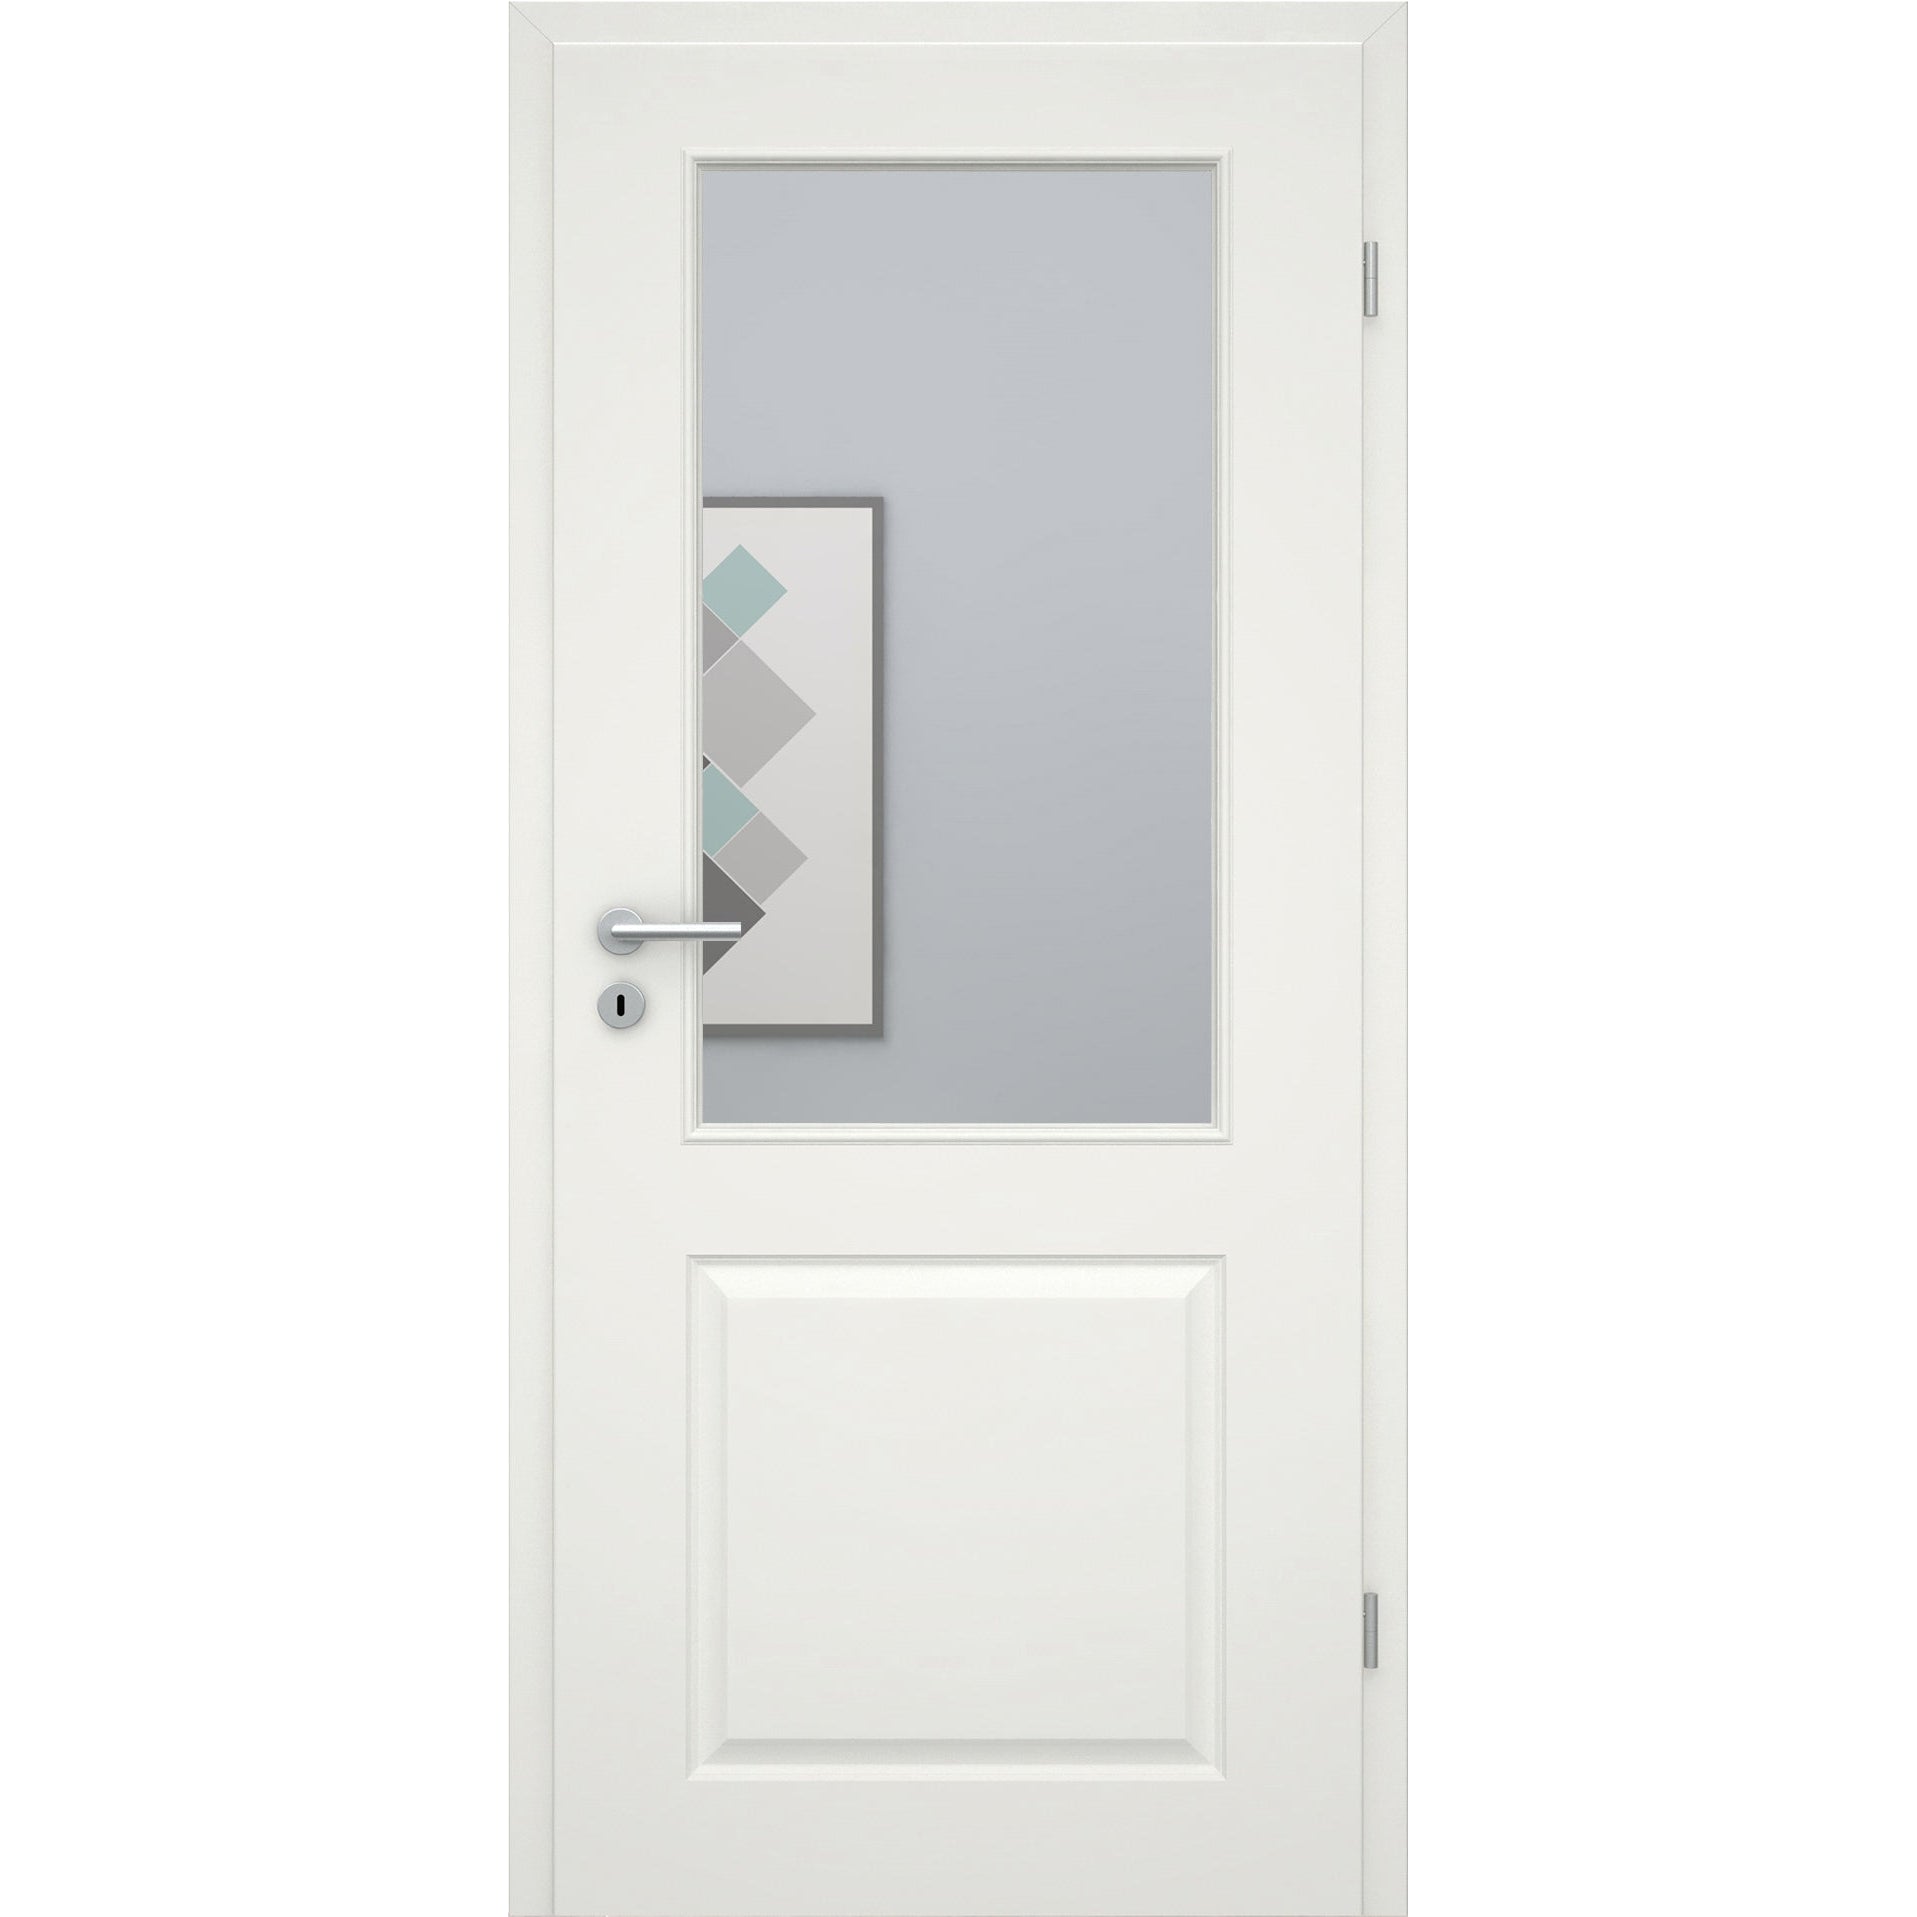 Zimmertür mit Zarge soft-weiß Stiltür mit 2 Kassetten und Lichtausschnitt Eckkante - Modell Stiltür K21LA